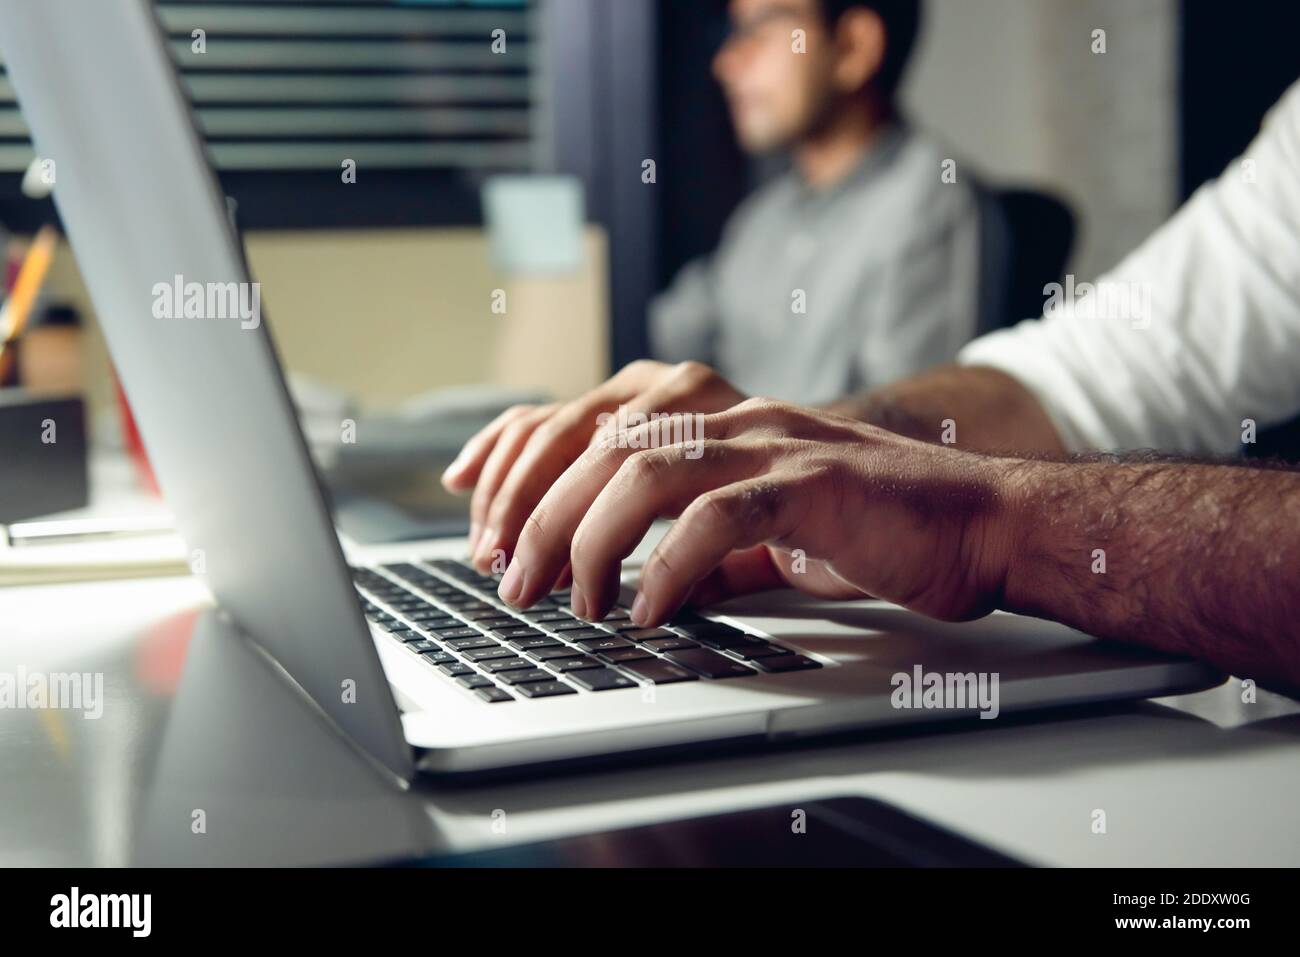 Mains d'un homme tapant sur un ordinateur portable travaillant des heures supplémentaires tard dans la nuit dans le bureau à son bureau Banque D'Images